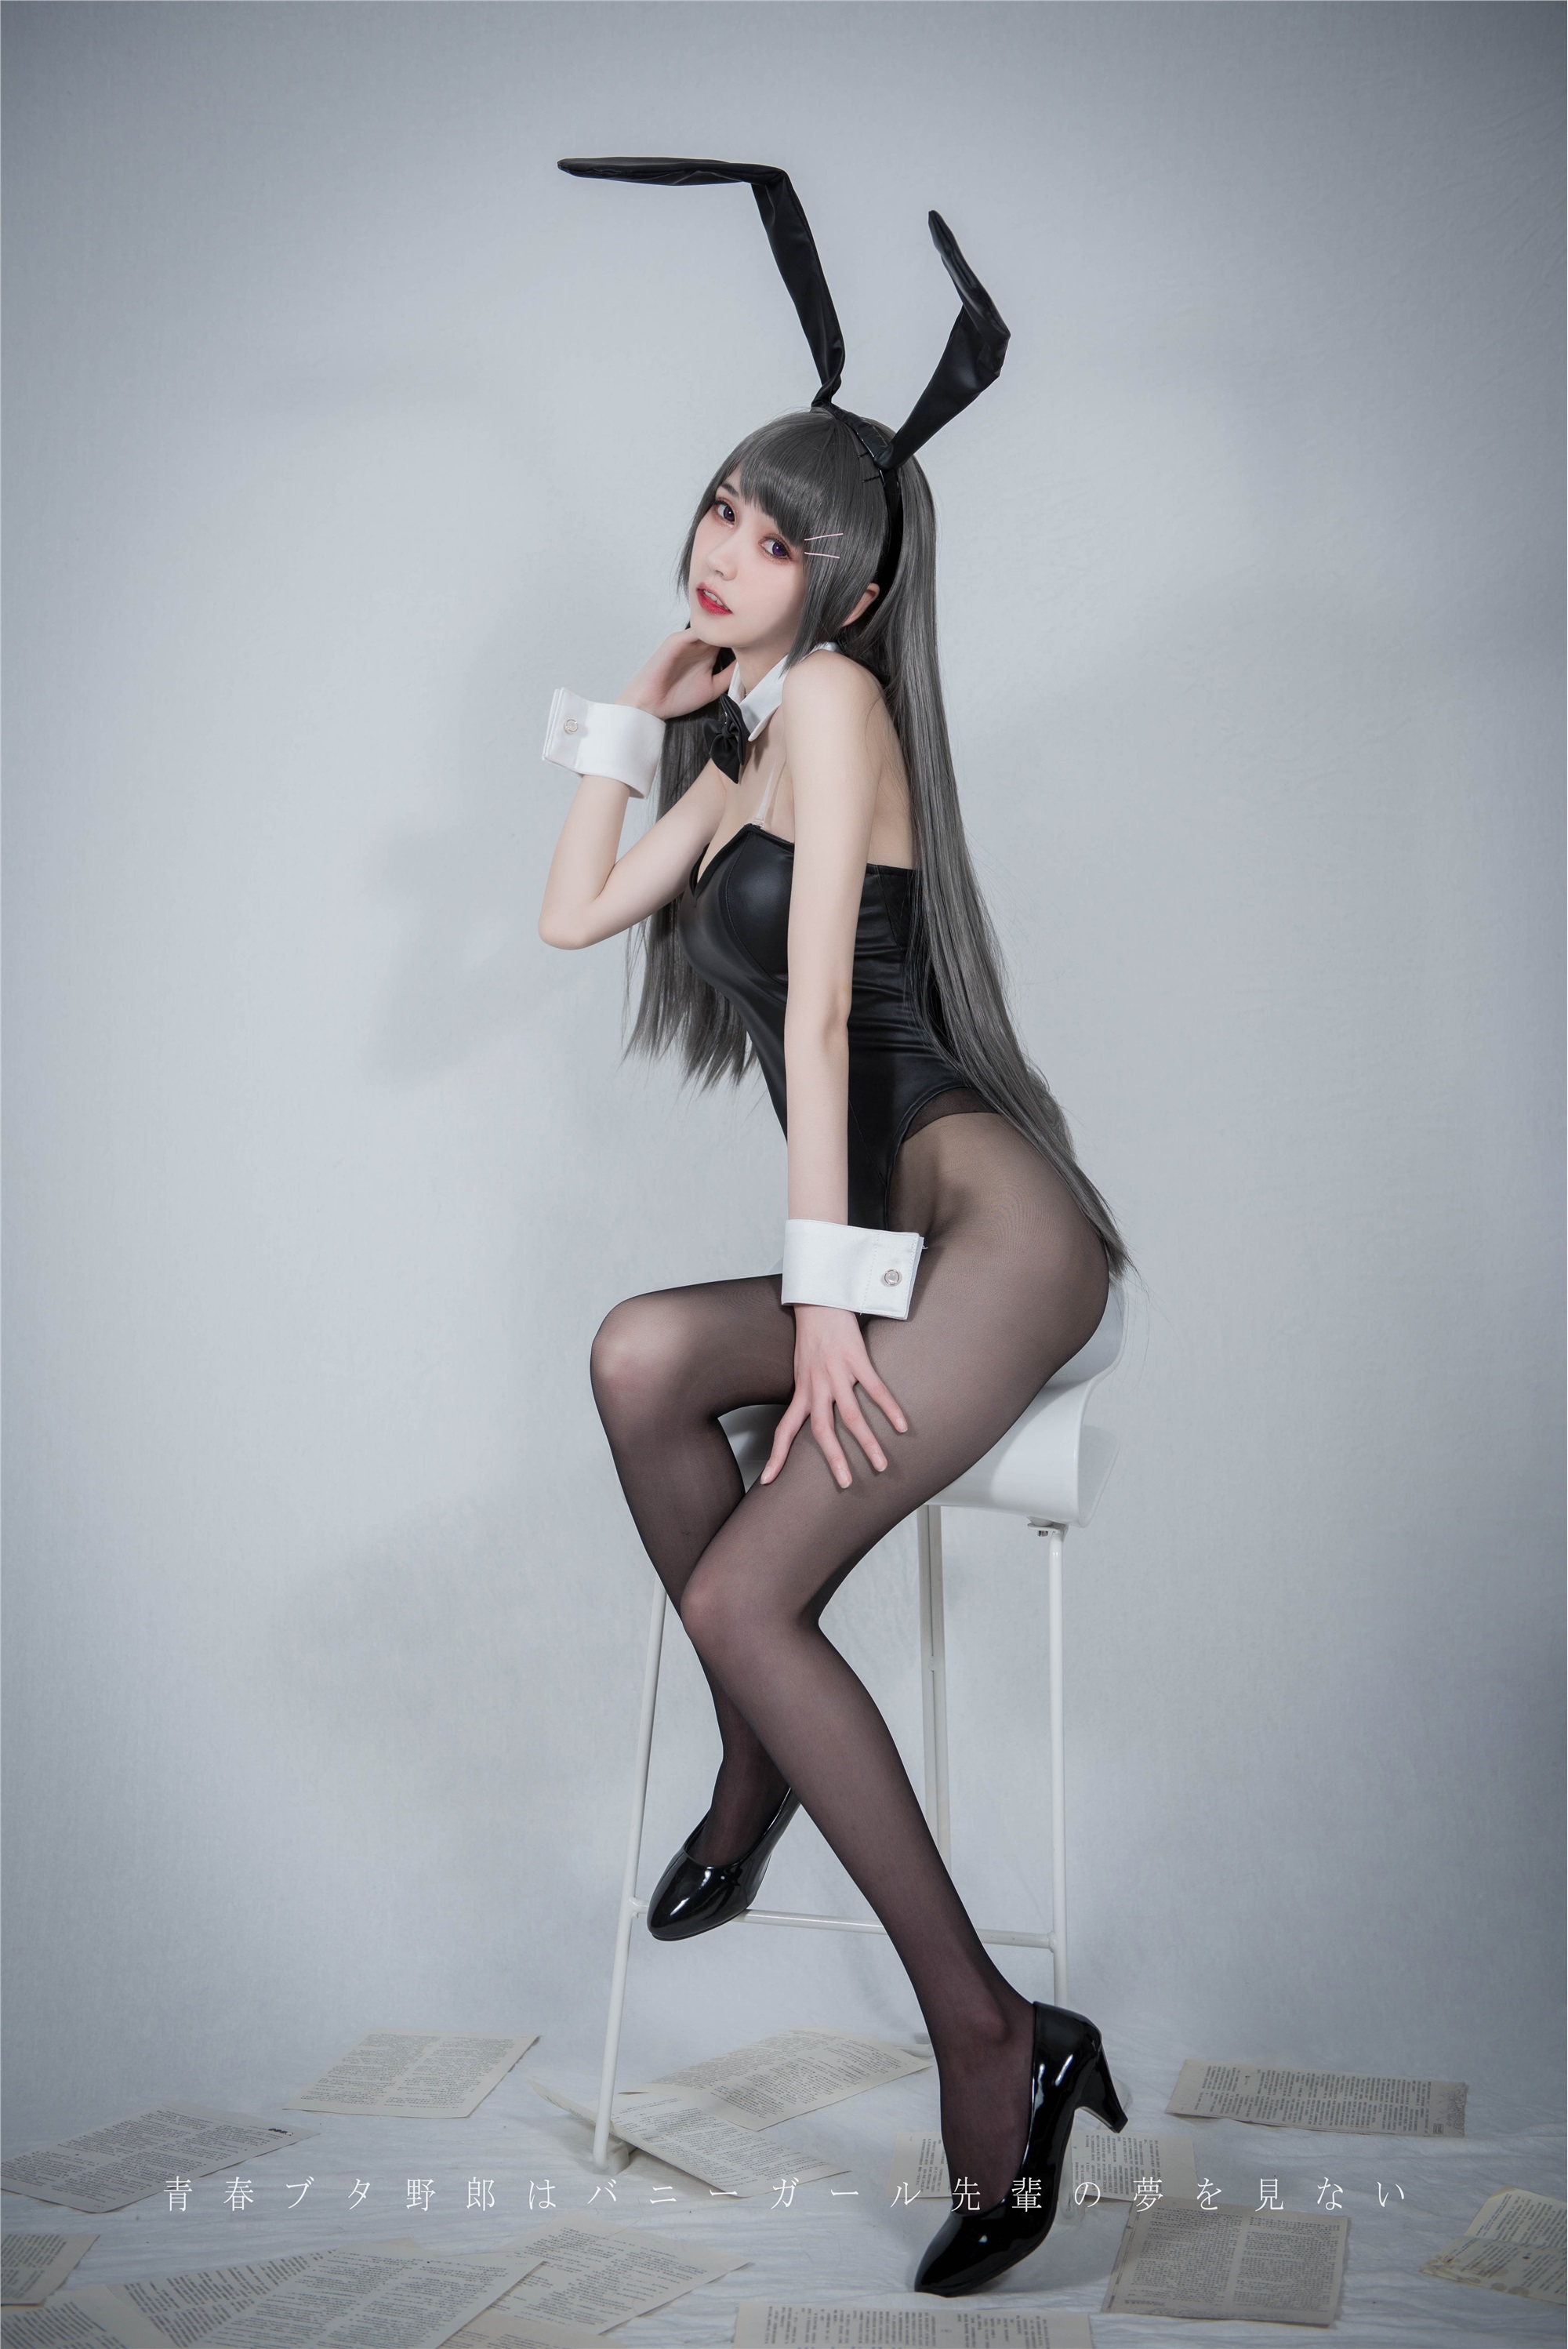 Your daughter, Xuejie Bunny